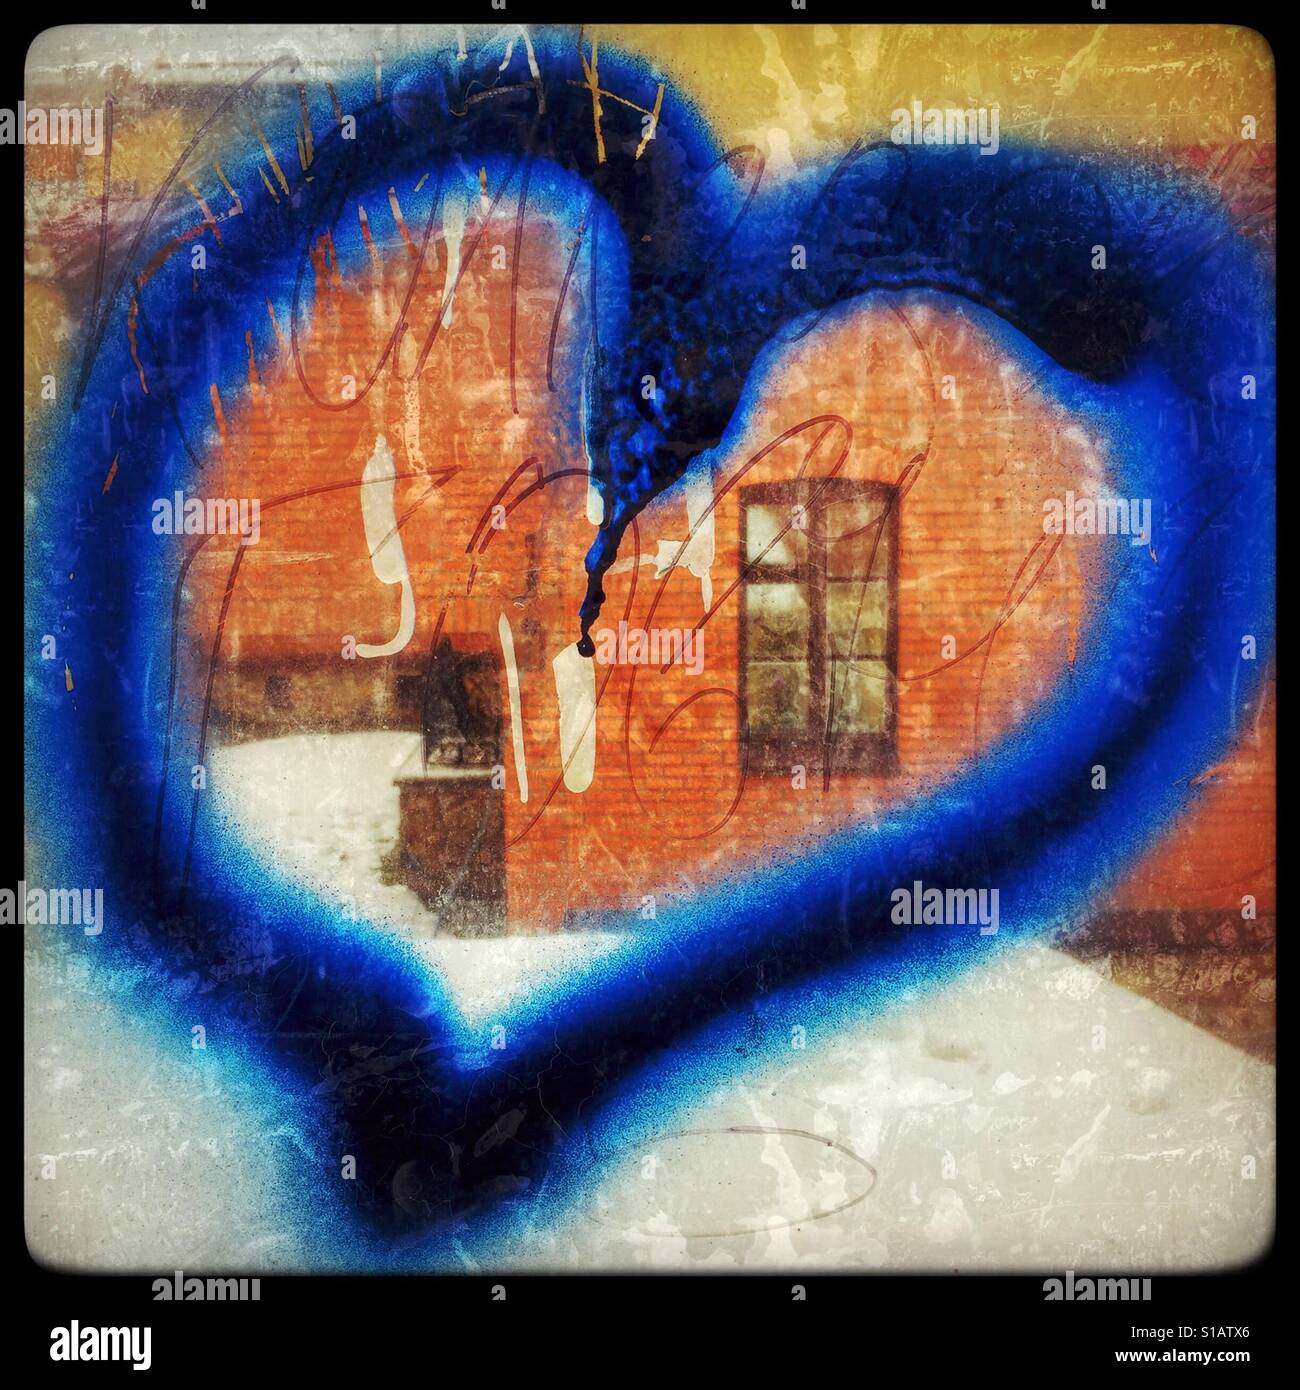 Coeur bleu graffiti sur la fenêtre Banque D'Images